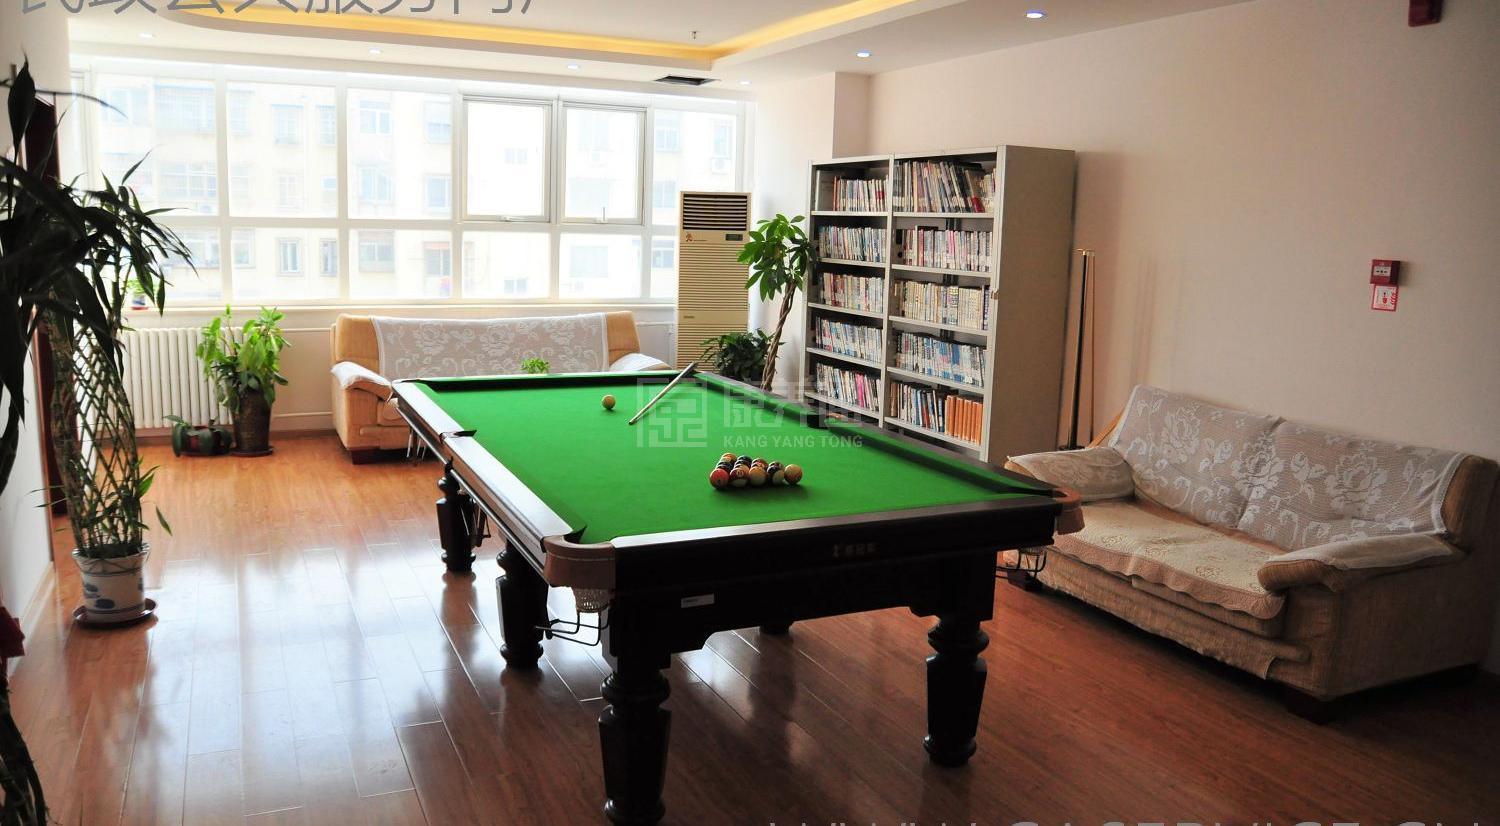 北京市朝阳区潘家园老年公寓服务项目图4让长者主动而自立地生活